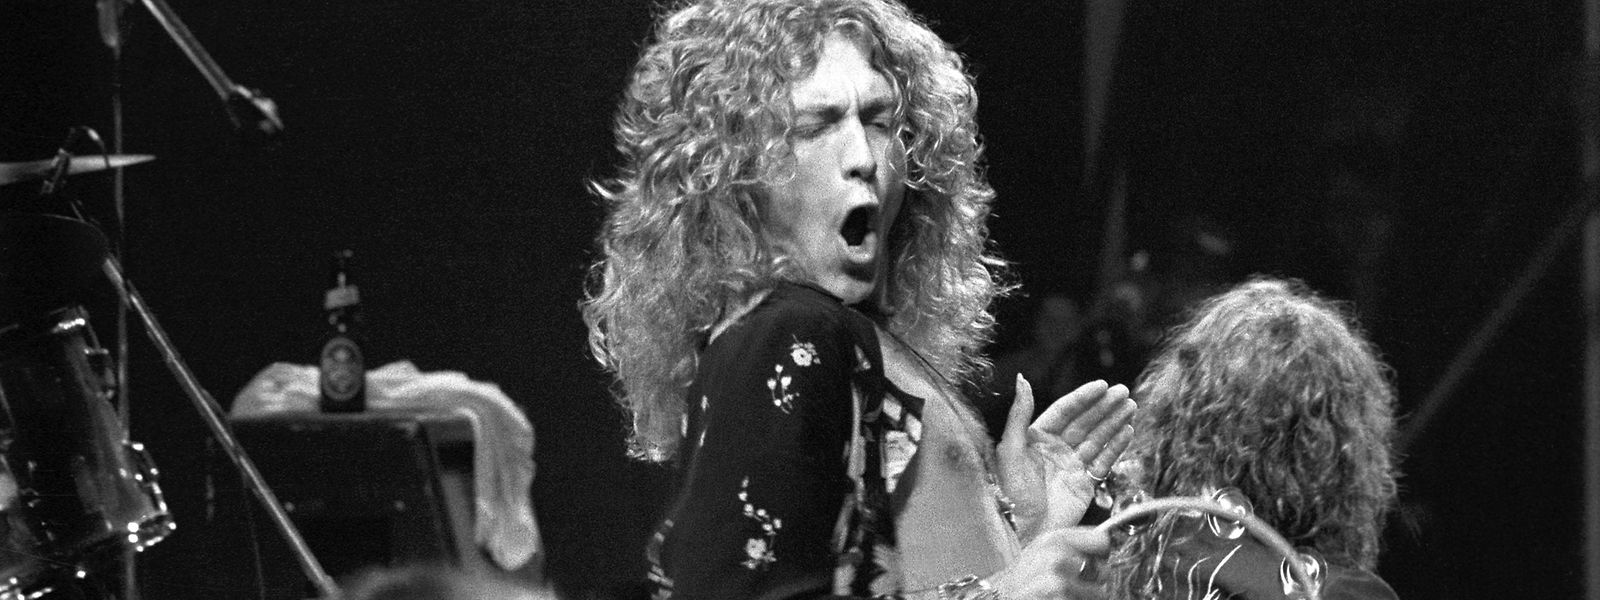 Explosiv: Robert Plant und Led Zeppelin in den 1970er-Jahren.